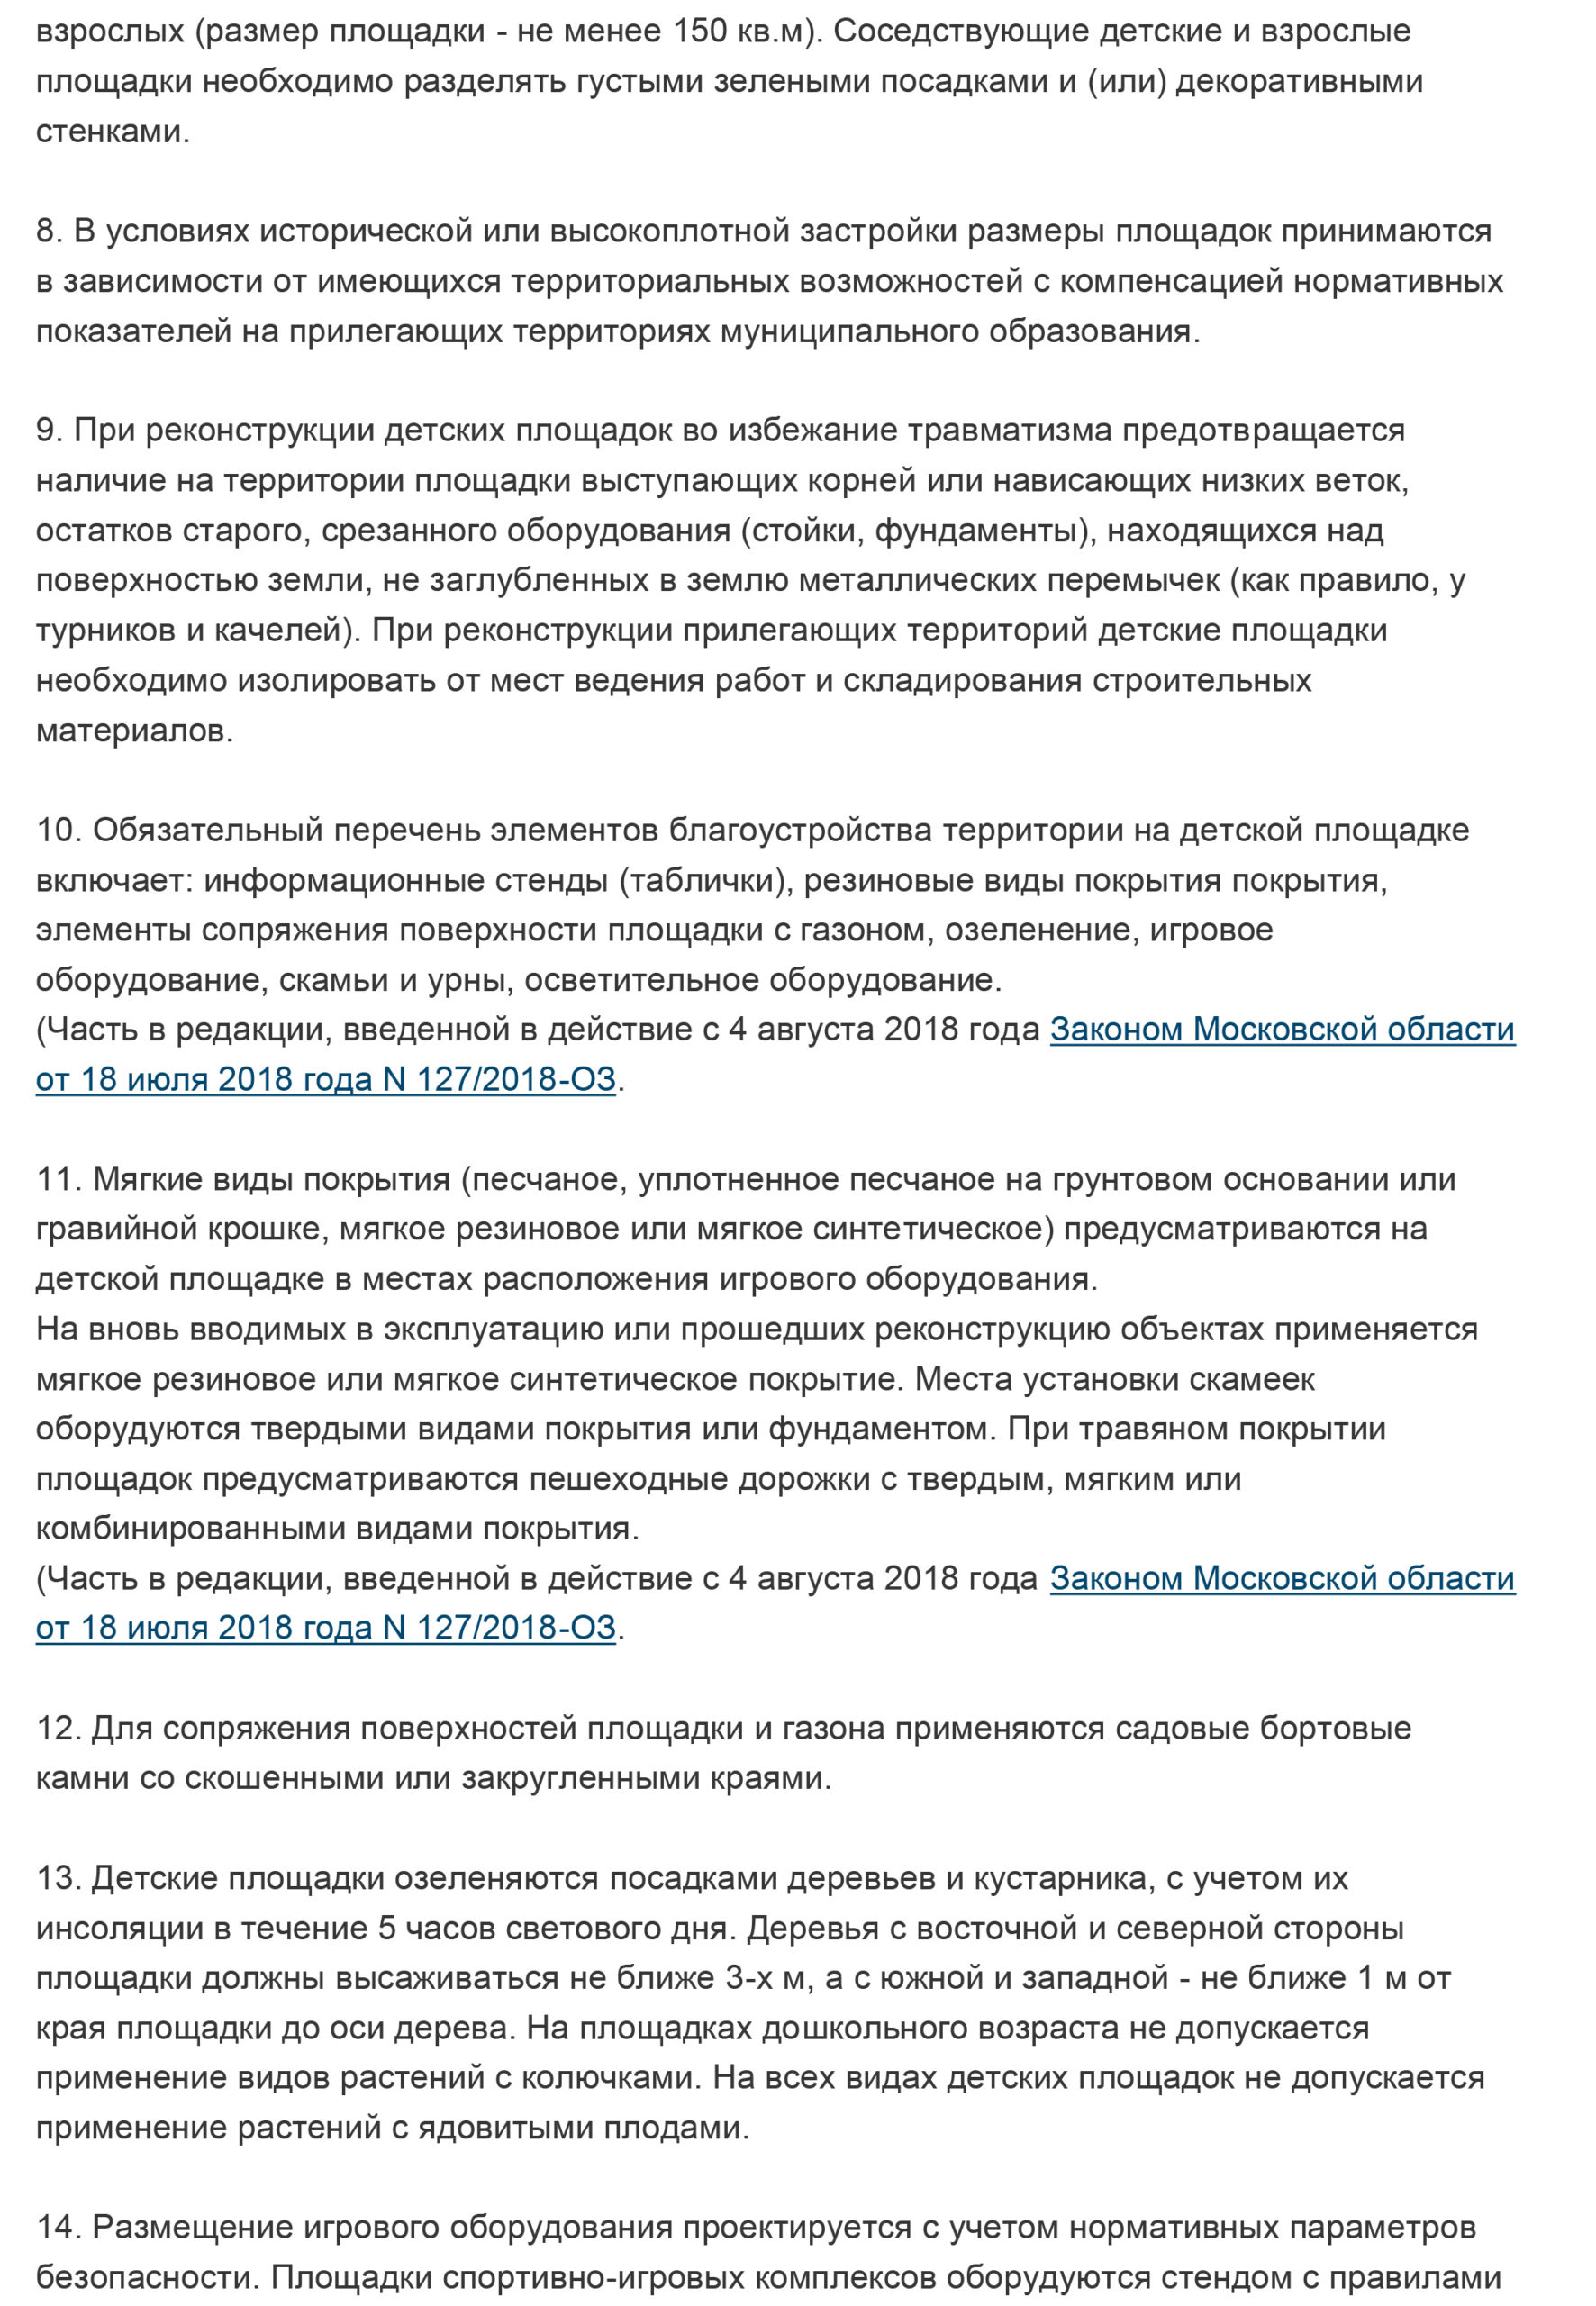 Основные требования к детским и спортивным площадкам в Московской .